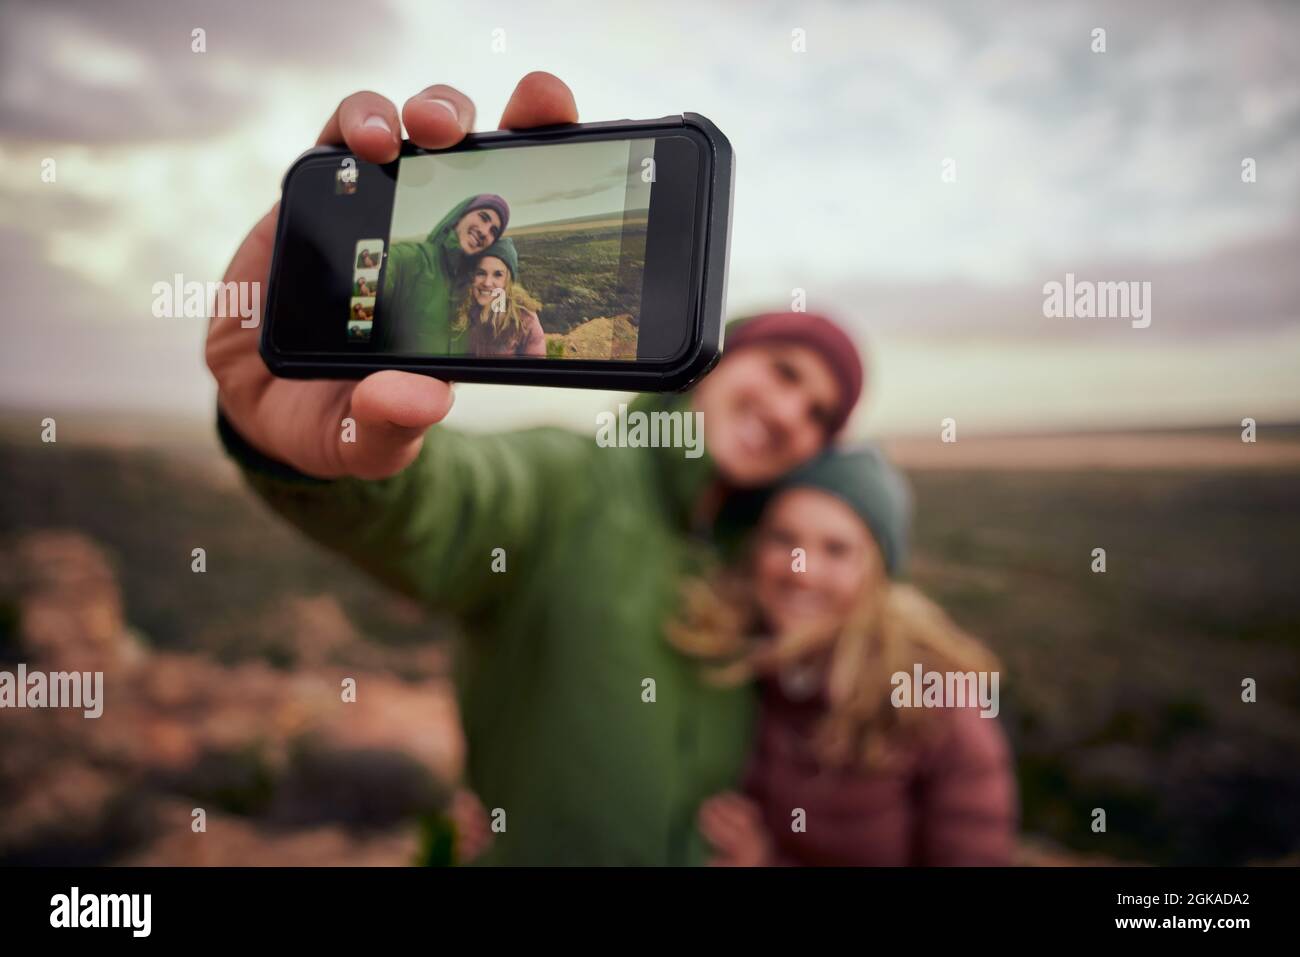 Primo piano di mano maschile che tiene smartphone prendere selfie con la ragazza mentre sulla collina di montagna dopo l'escursione Foto Stock